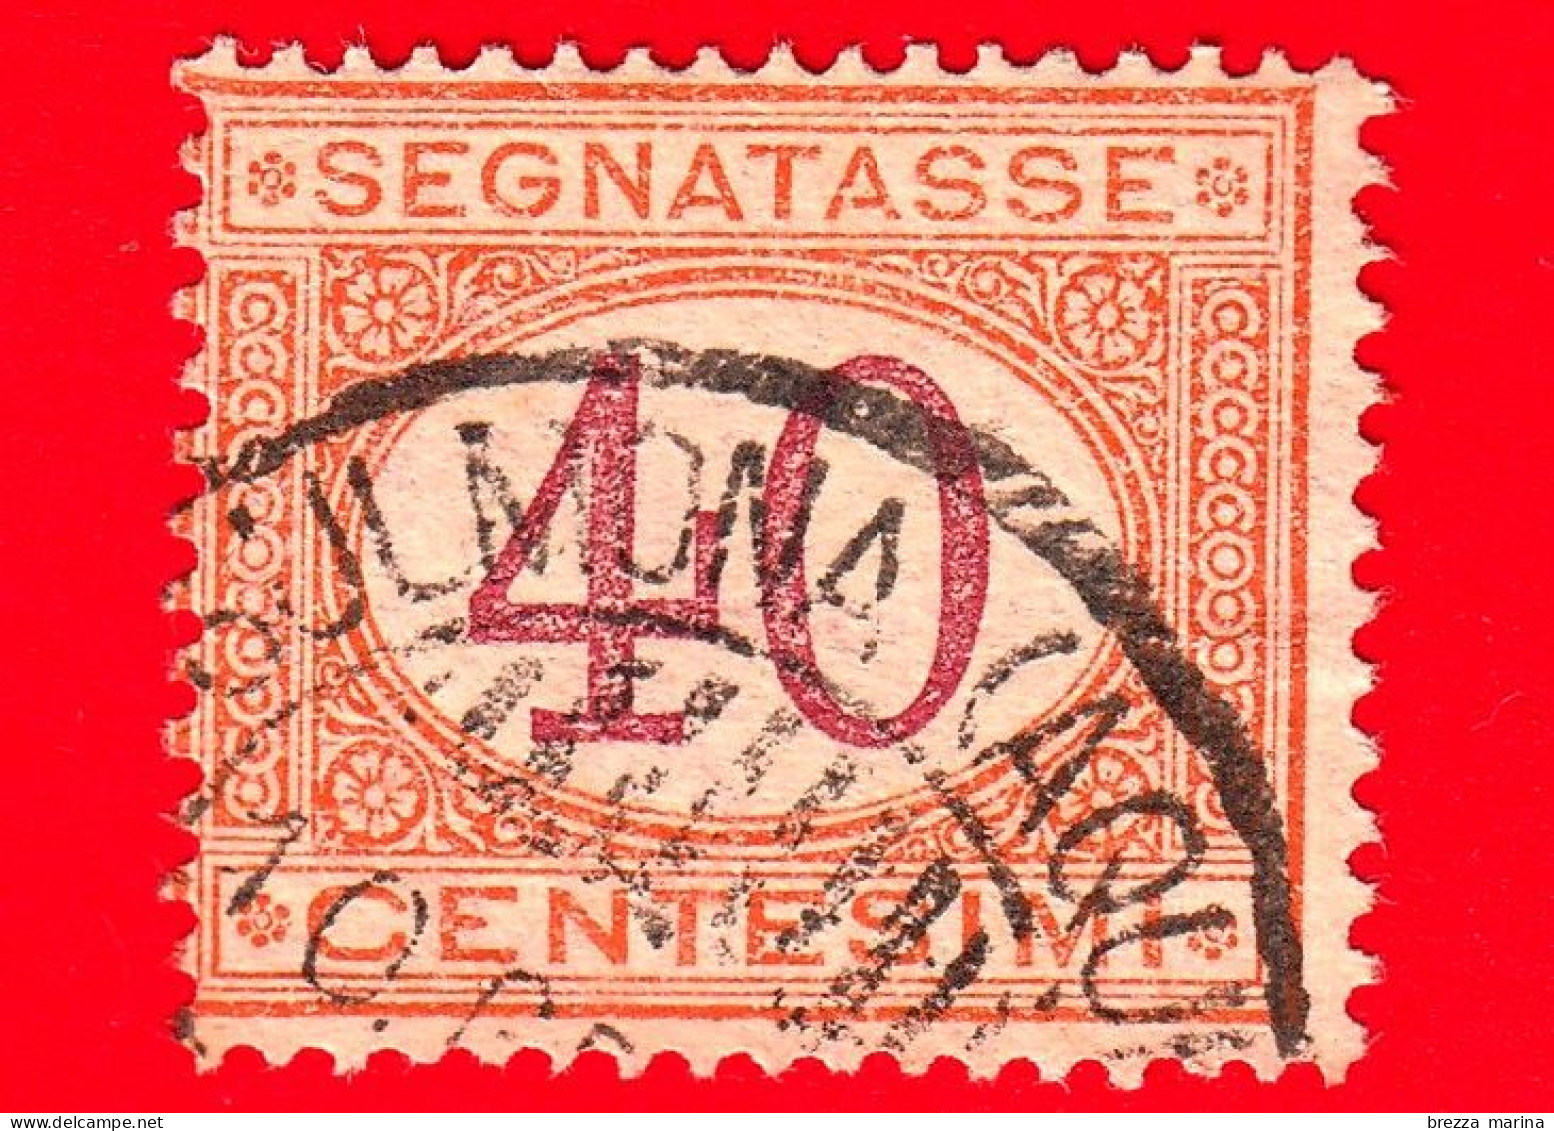 ITALIA - Usato -  1870 - 1890 - Segnatasse - Cifra Entro Un Ovale - 40 C. - Portomarken